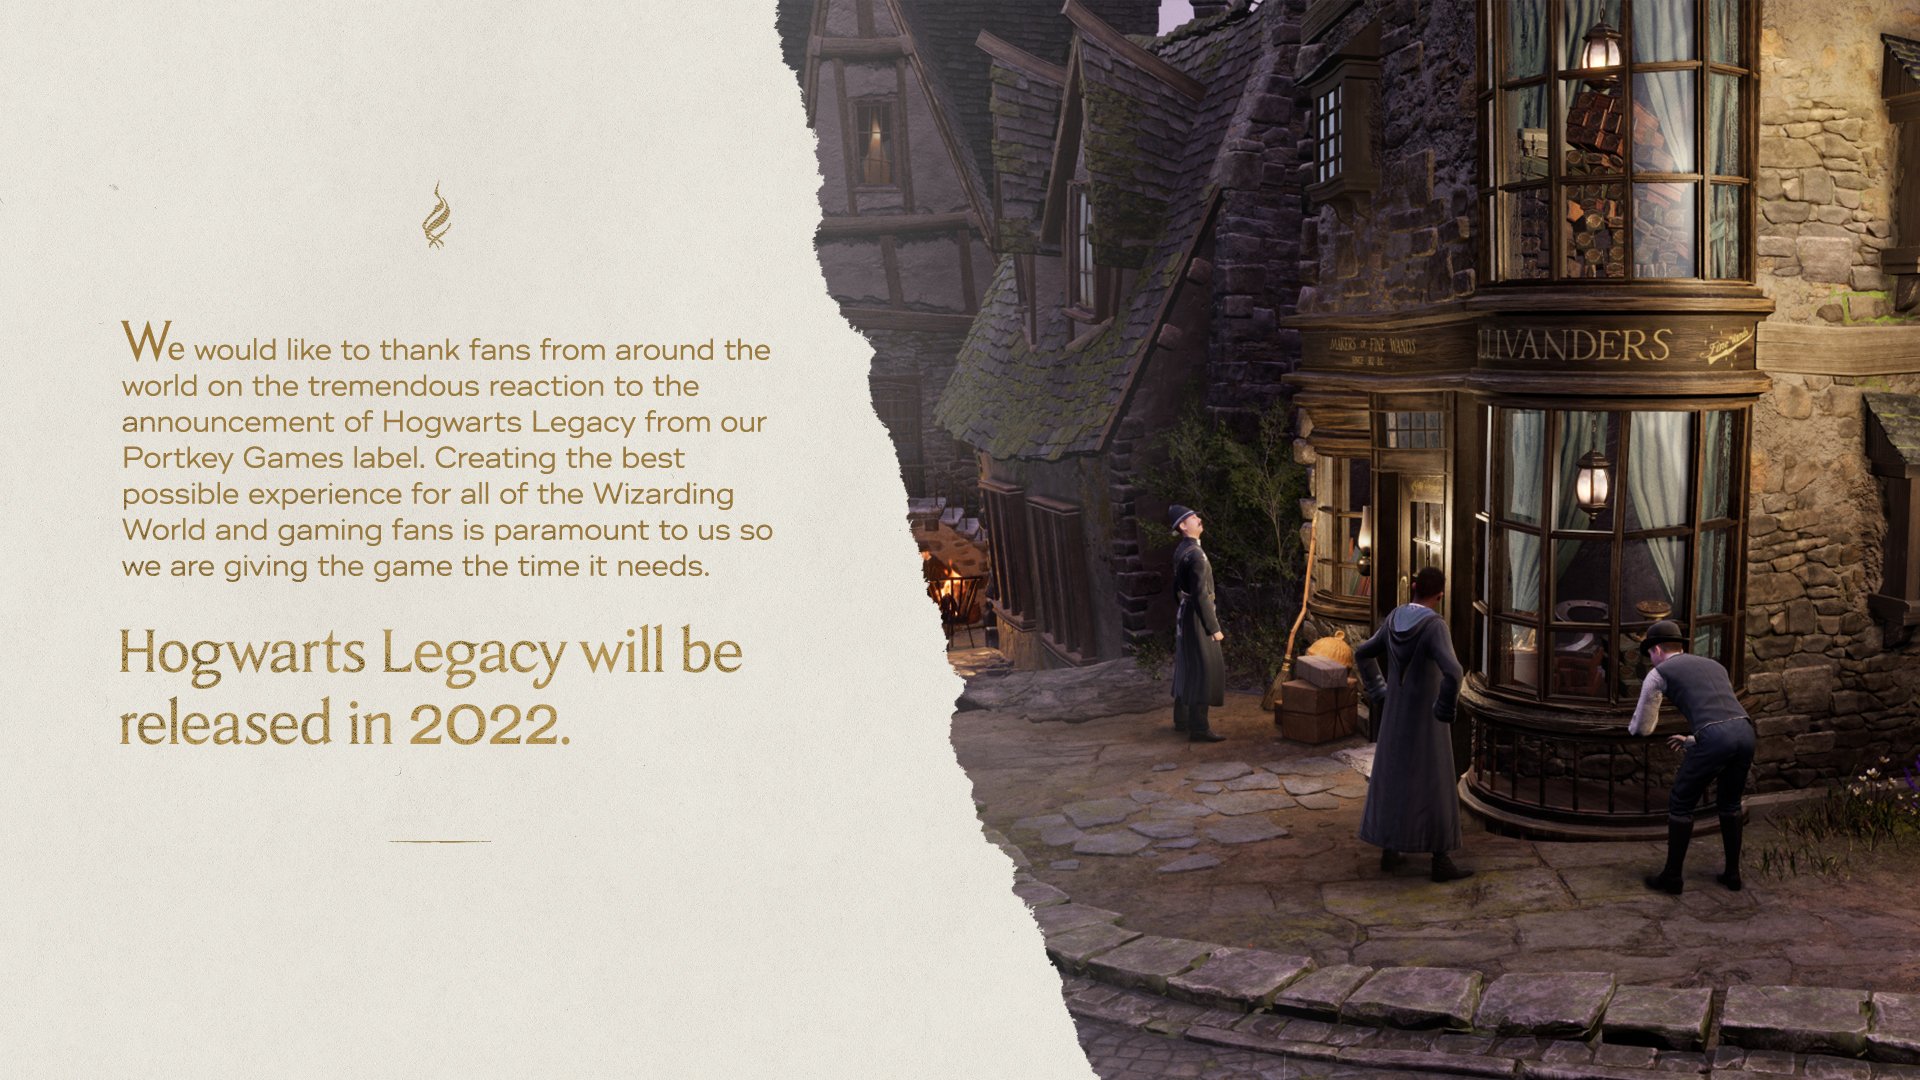 Confira tudo sobre o jogo Hogwarts Legacy e o universo de Harry Potter